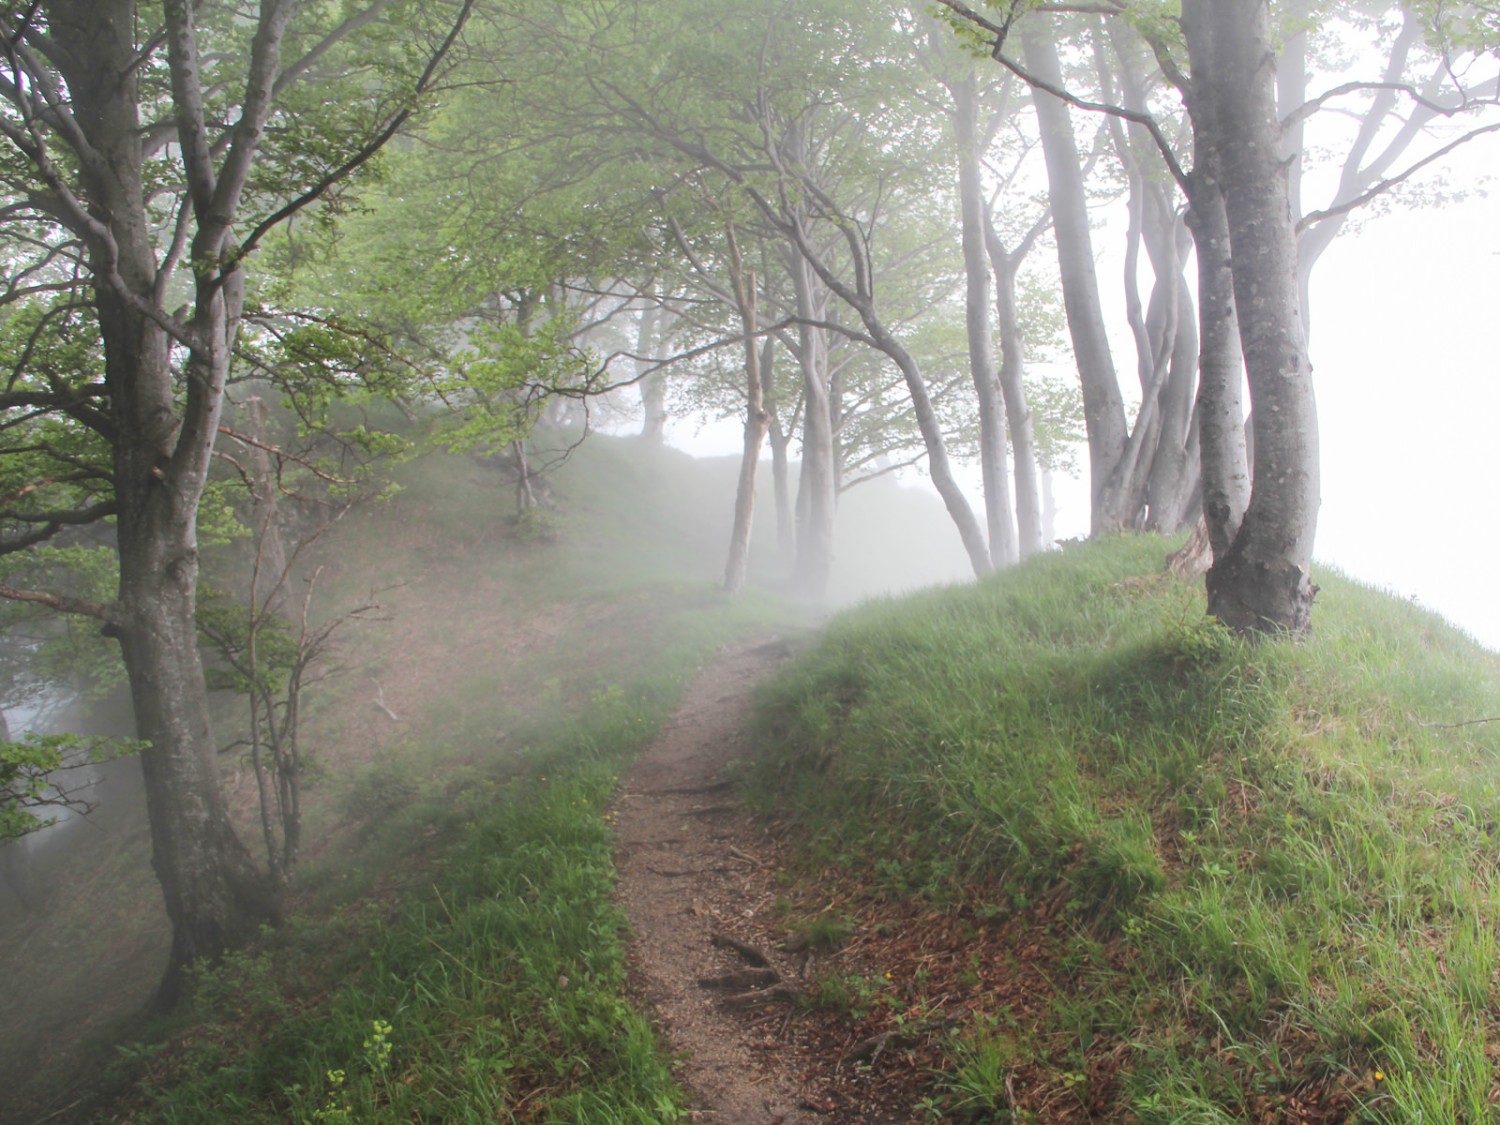 Le chemin traverse un bosquet de bouleaux, puis une forêt de hêtres. Photo: Andreas Sommer